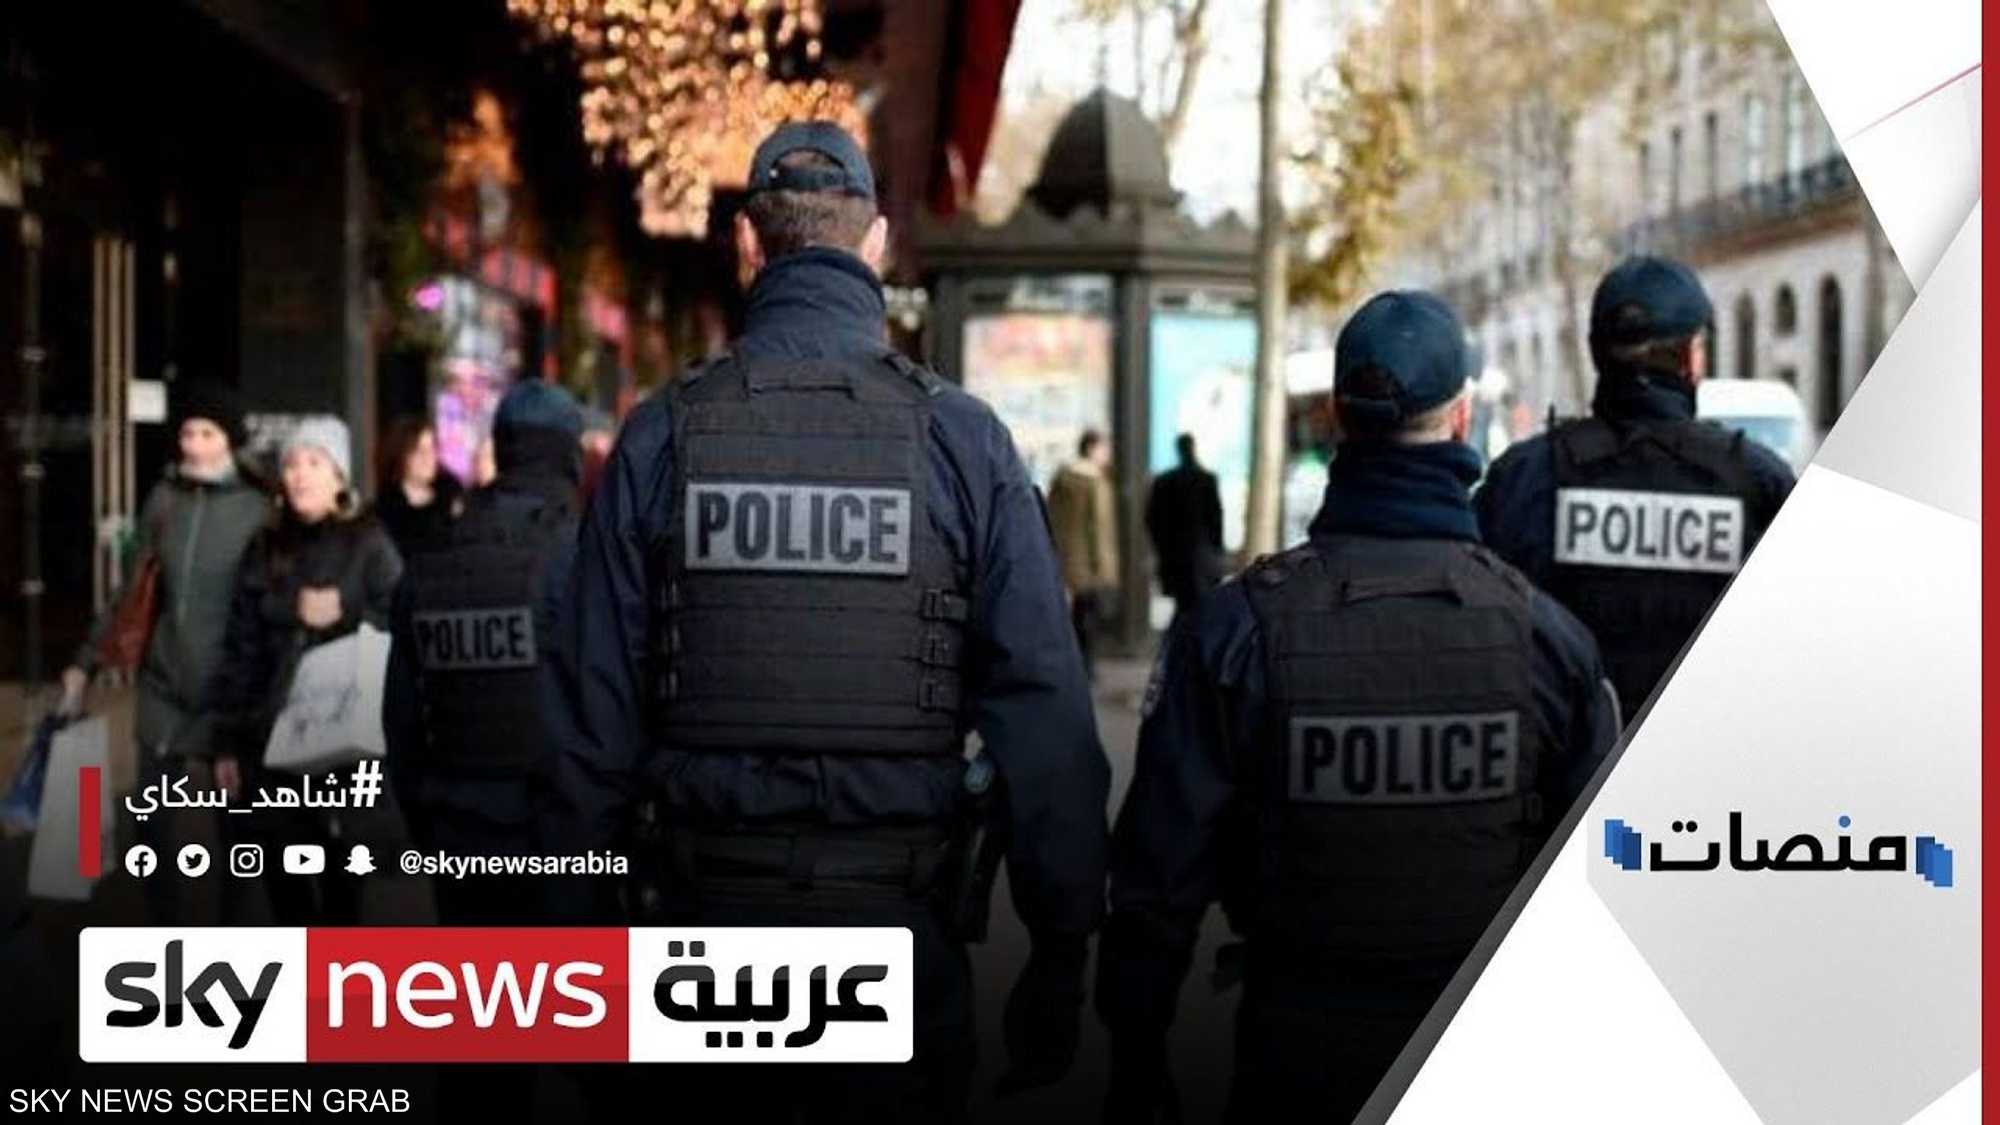 الاعتداء على مسلمتين في باريس يثير غضبا على مواقع التواصل